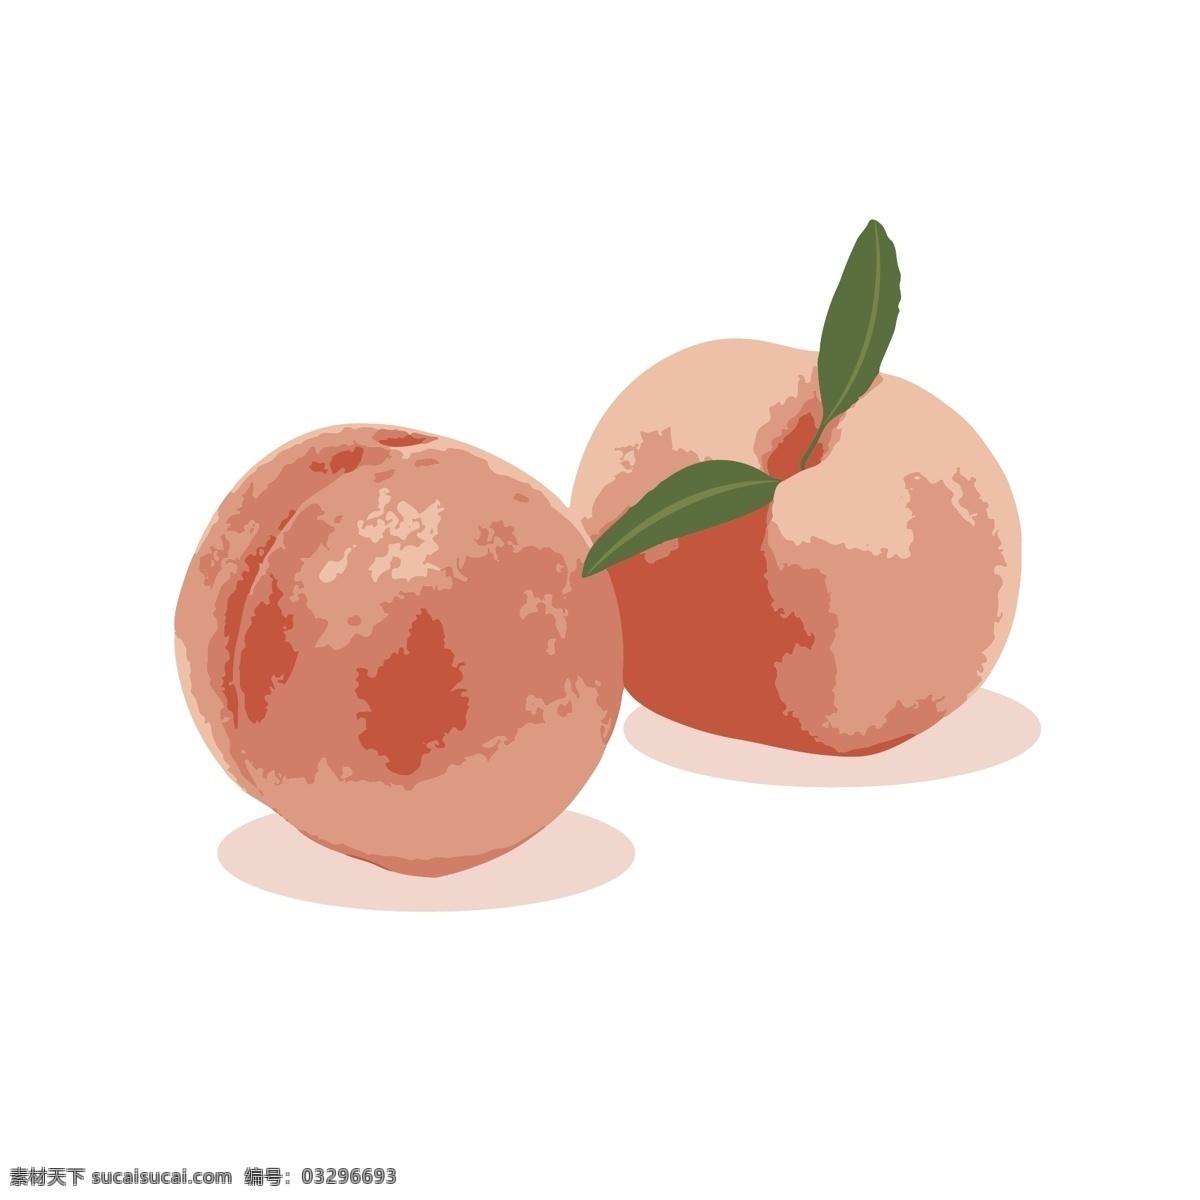 桃子 矢量 水果 必备 桃 桃子矢量 矢量桃子 效果元素